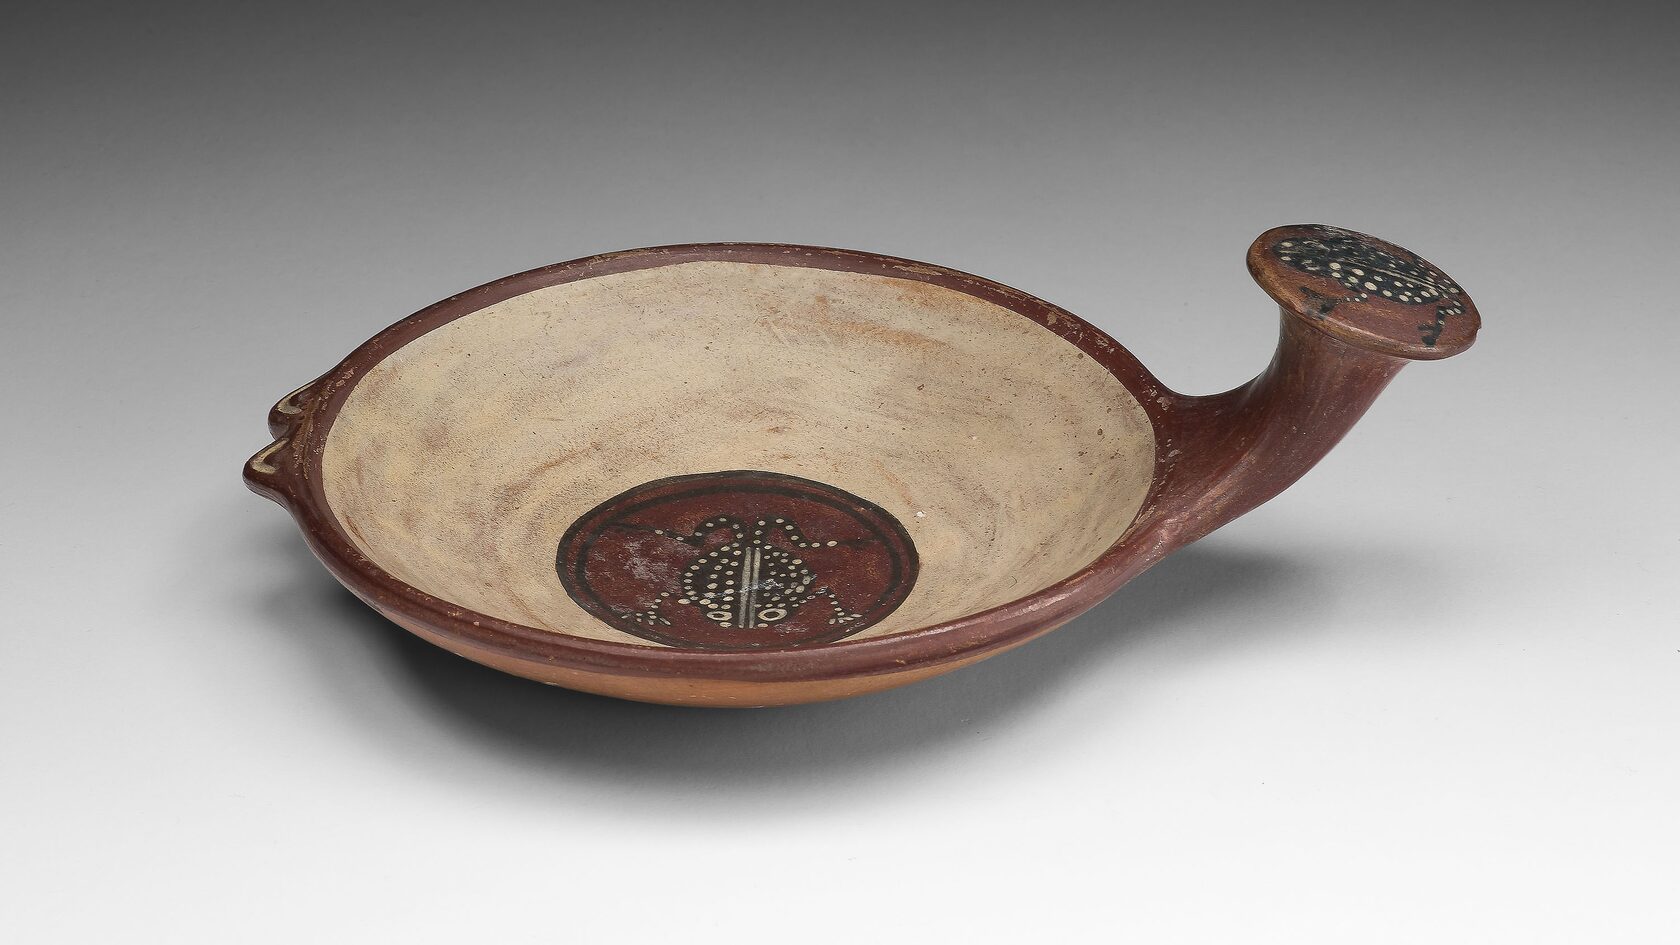 Небольшая чаша с изображениями лягушки, Инки, 1450-1532 гг. н.э. Коллекция Чикагского института искусств, Чикаго.